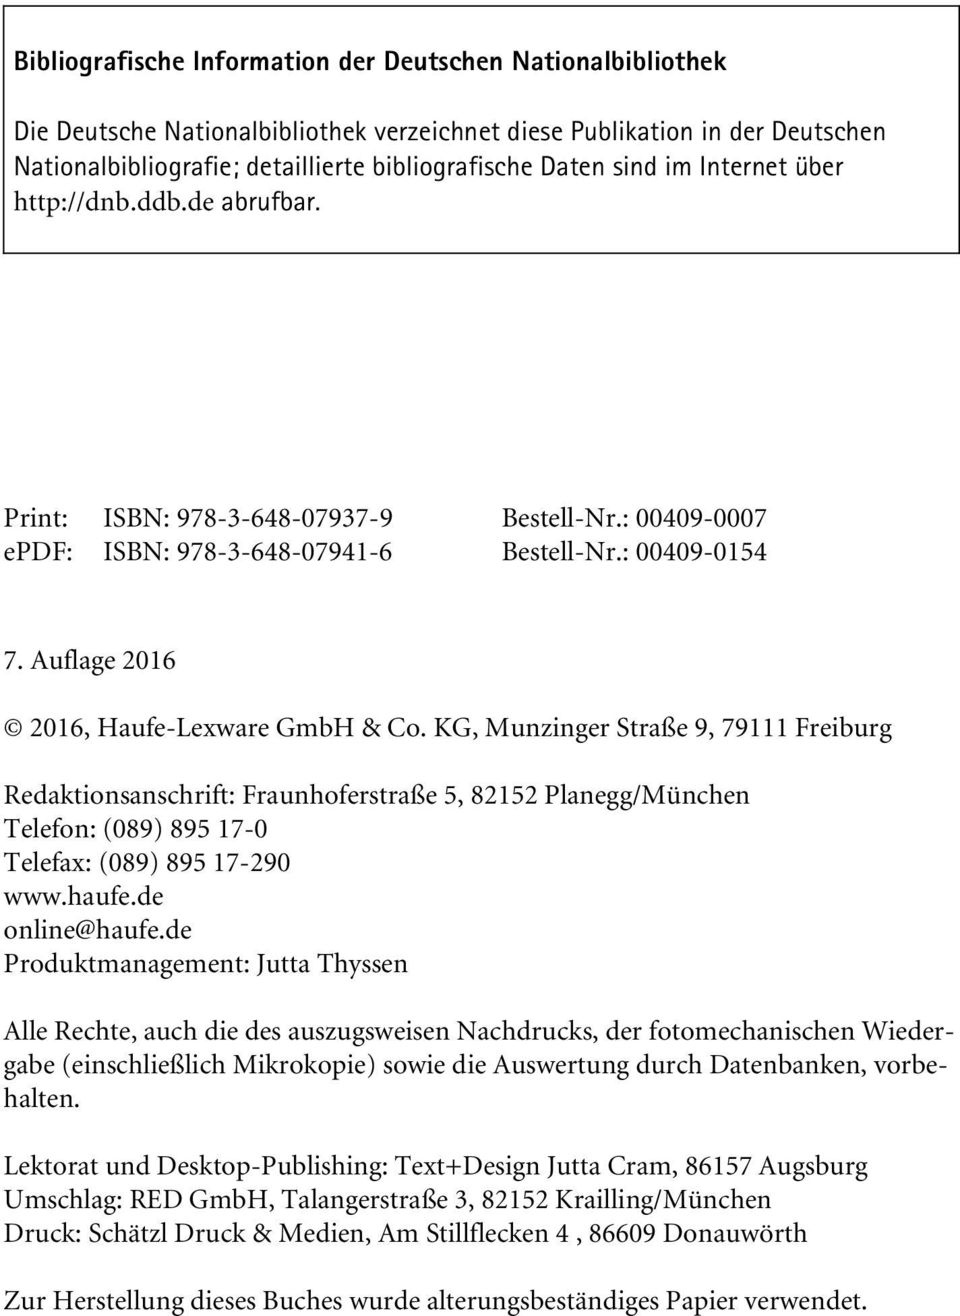 Auflage 2016 2016, Haufe-Lexware GmbH & Co. KG, Munzinger Straße 9, 79111 Freiburg Redaktionsanschrift: Fraunhoferstraße 5, 82152Planegg/München Telefon: (089) 895 17-0 Telefax: (089) 895 17-290 www.